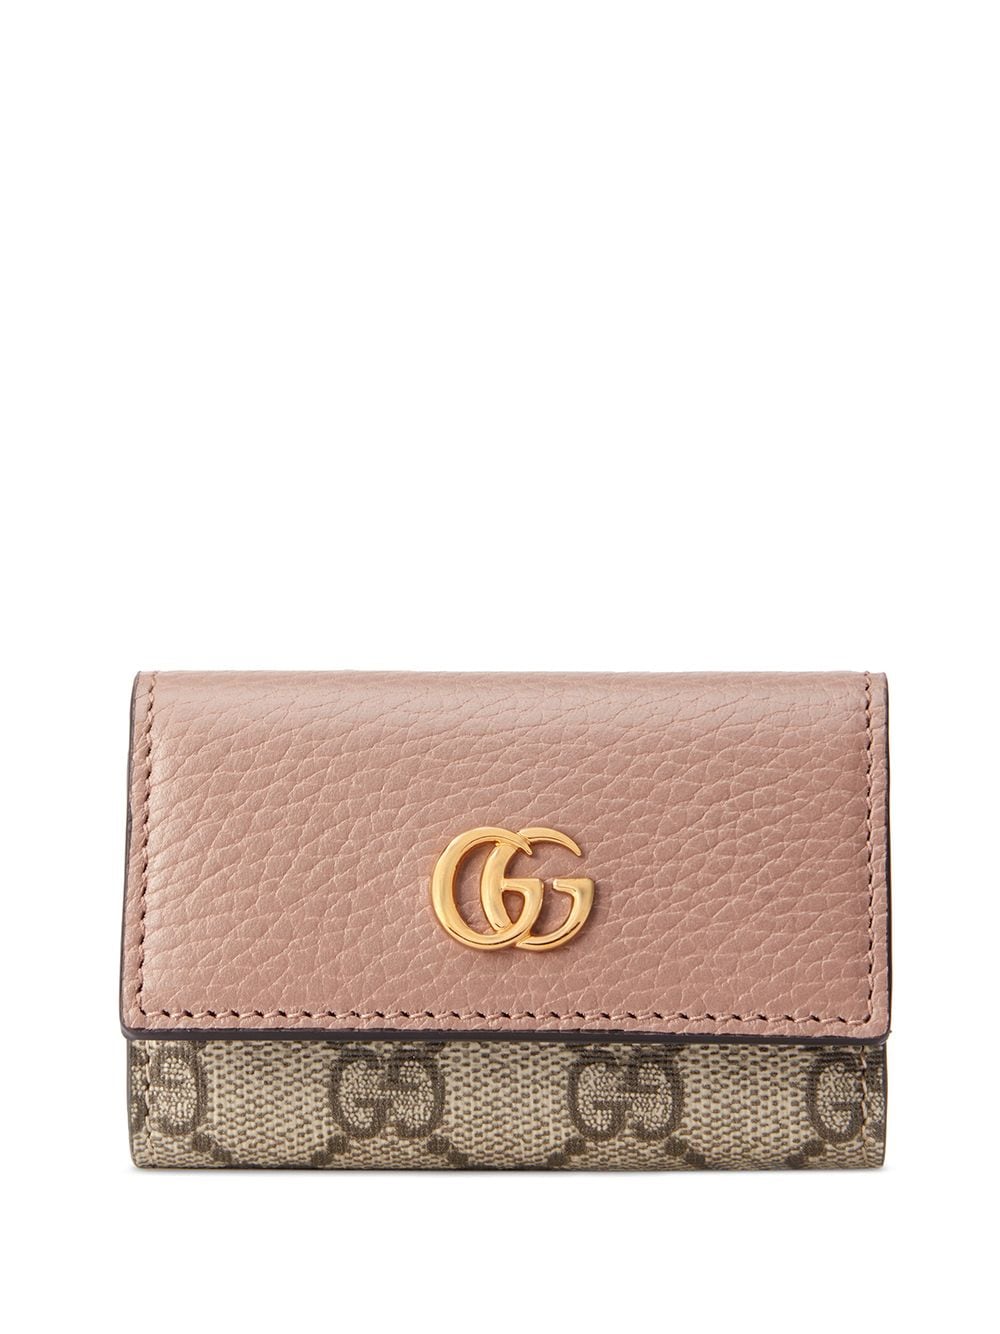 Gucci GG Marmont Leather Key Case VS Louis Vuitton 6 Key Holder Comparison  